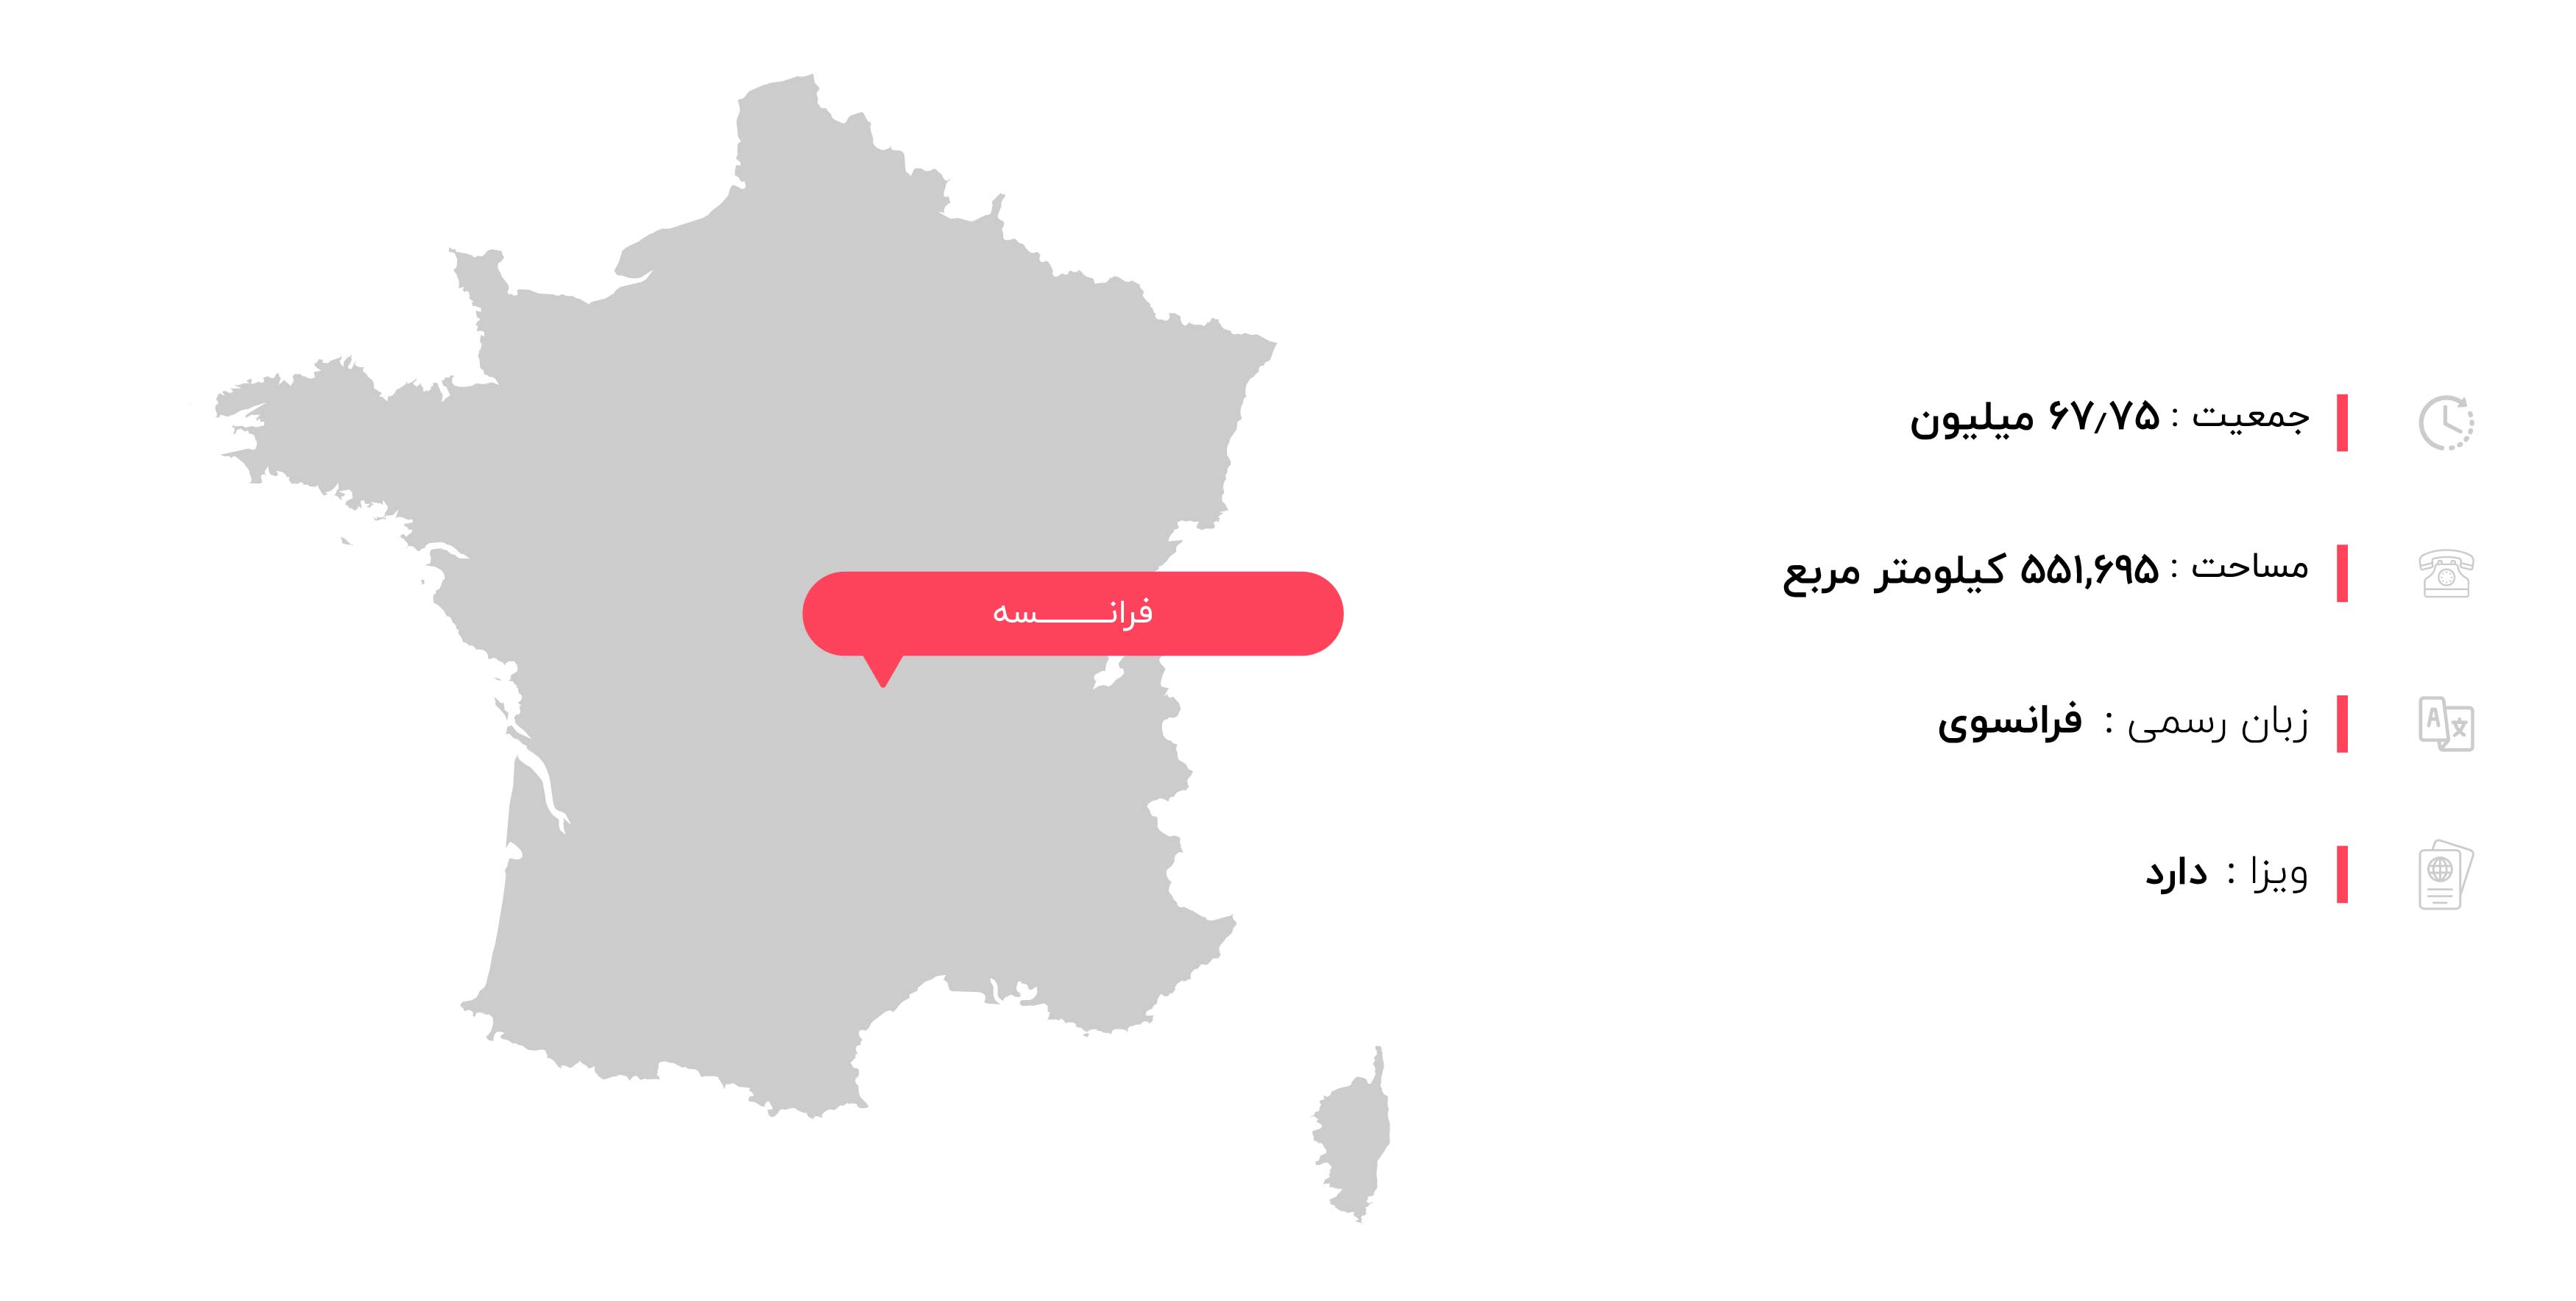  اطلاعات جغرافیایی فرانسه